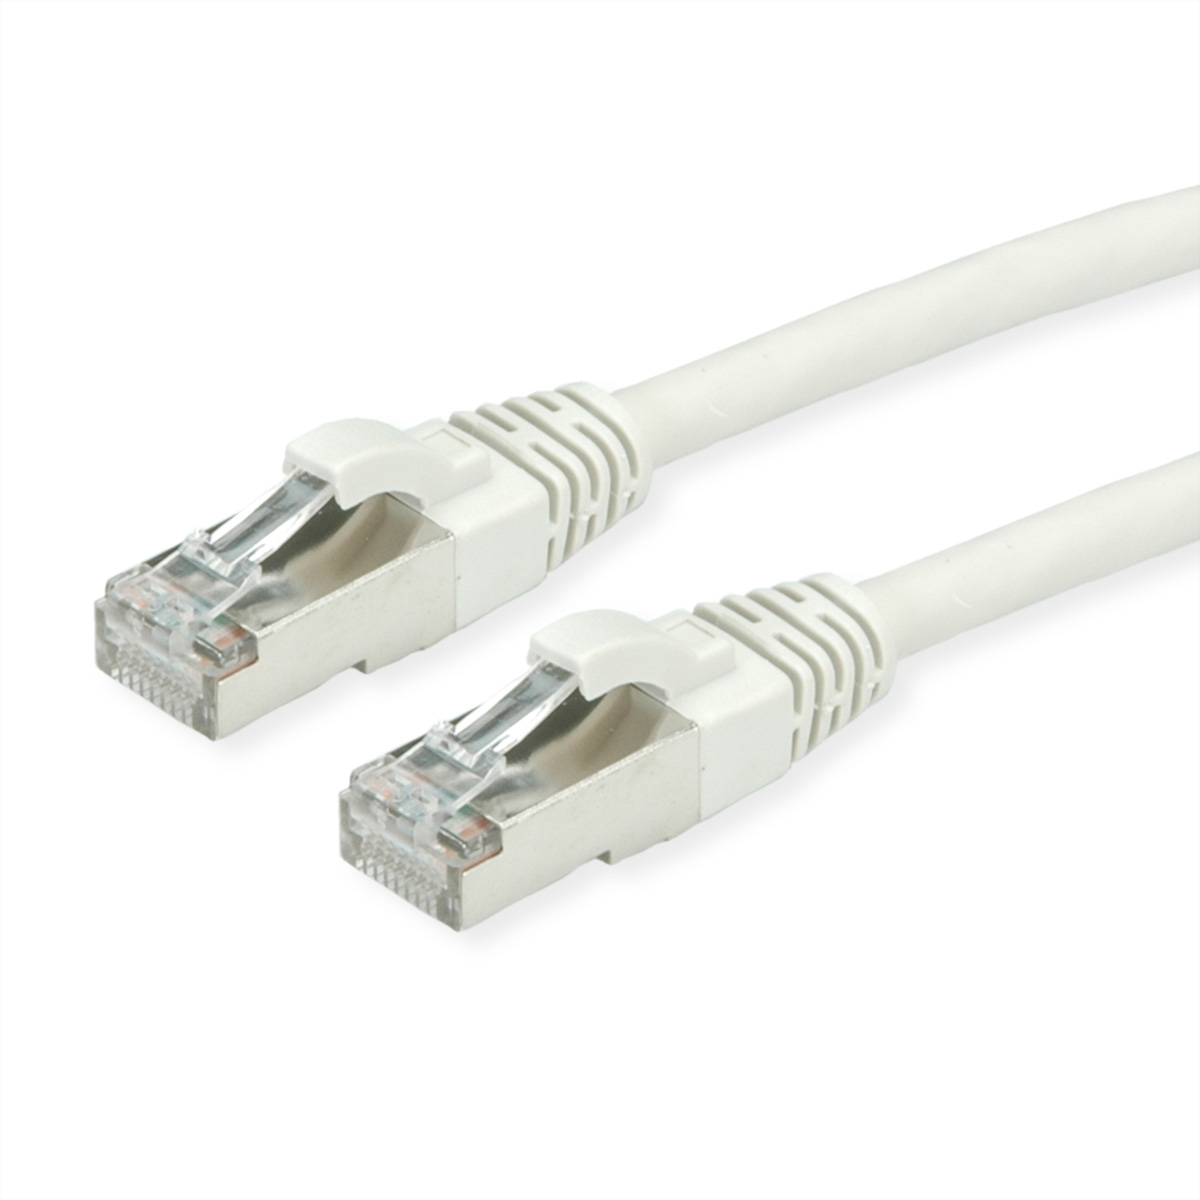 ROLINE S/FTP-Kabel Kat.7, LSOH, S/FTP Patchkabel, m 5